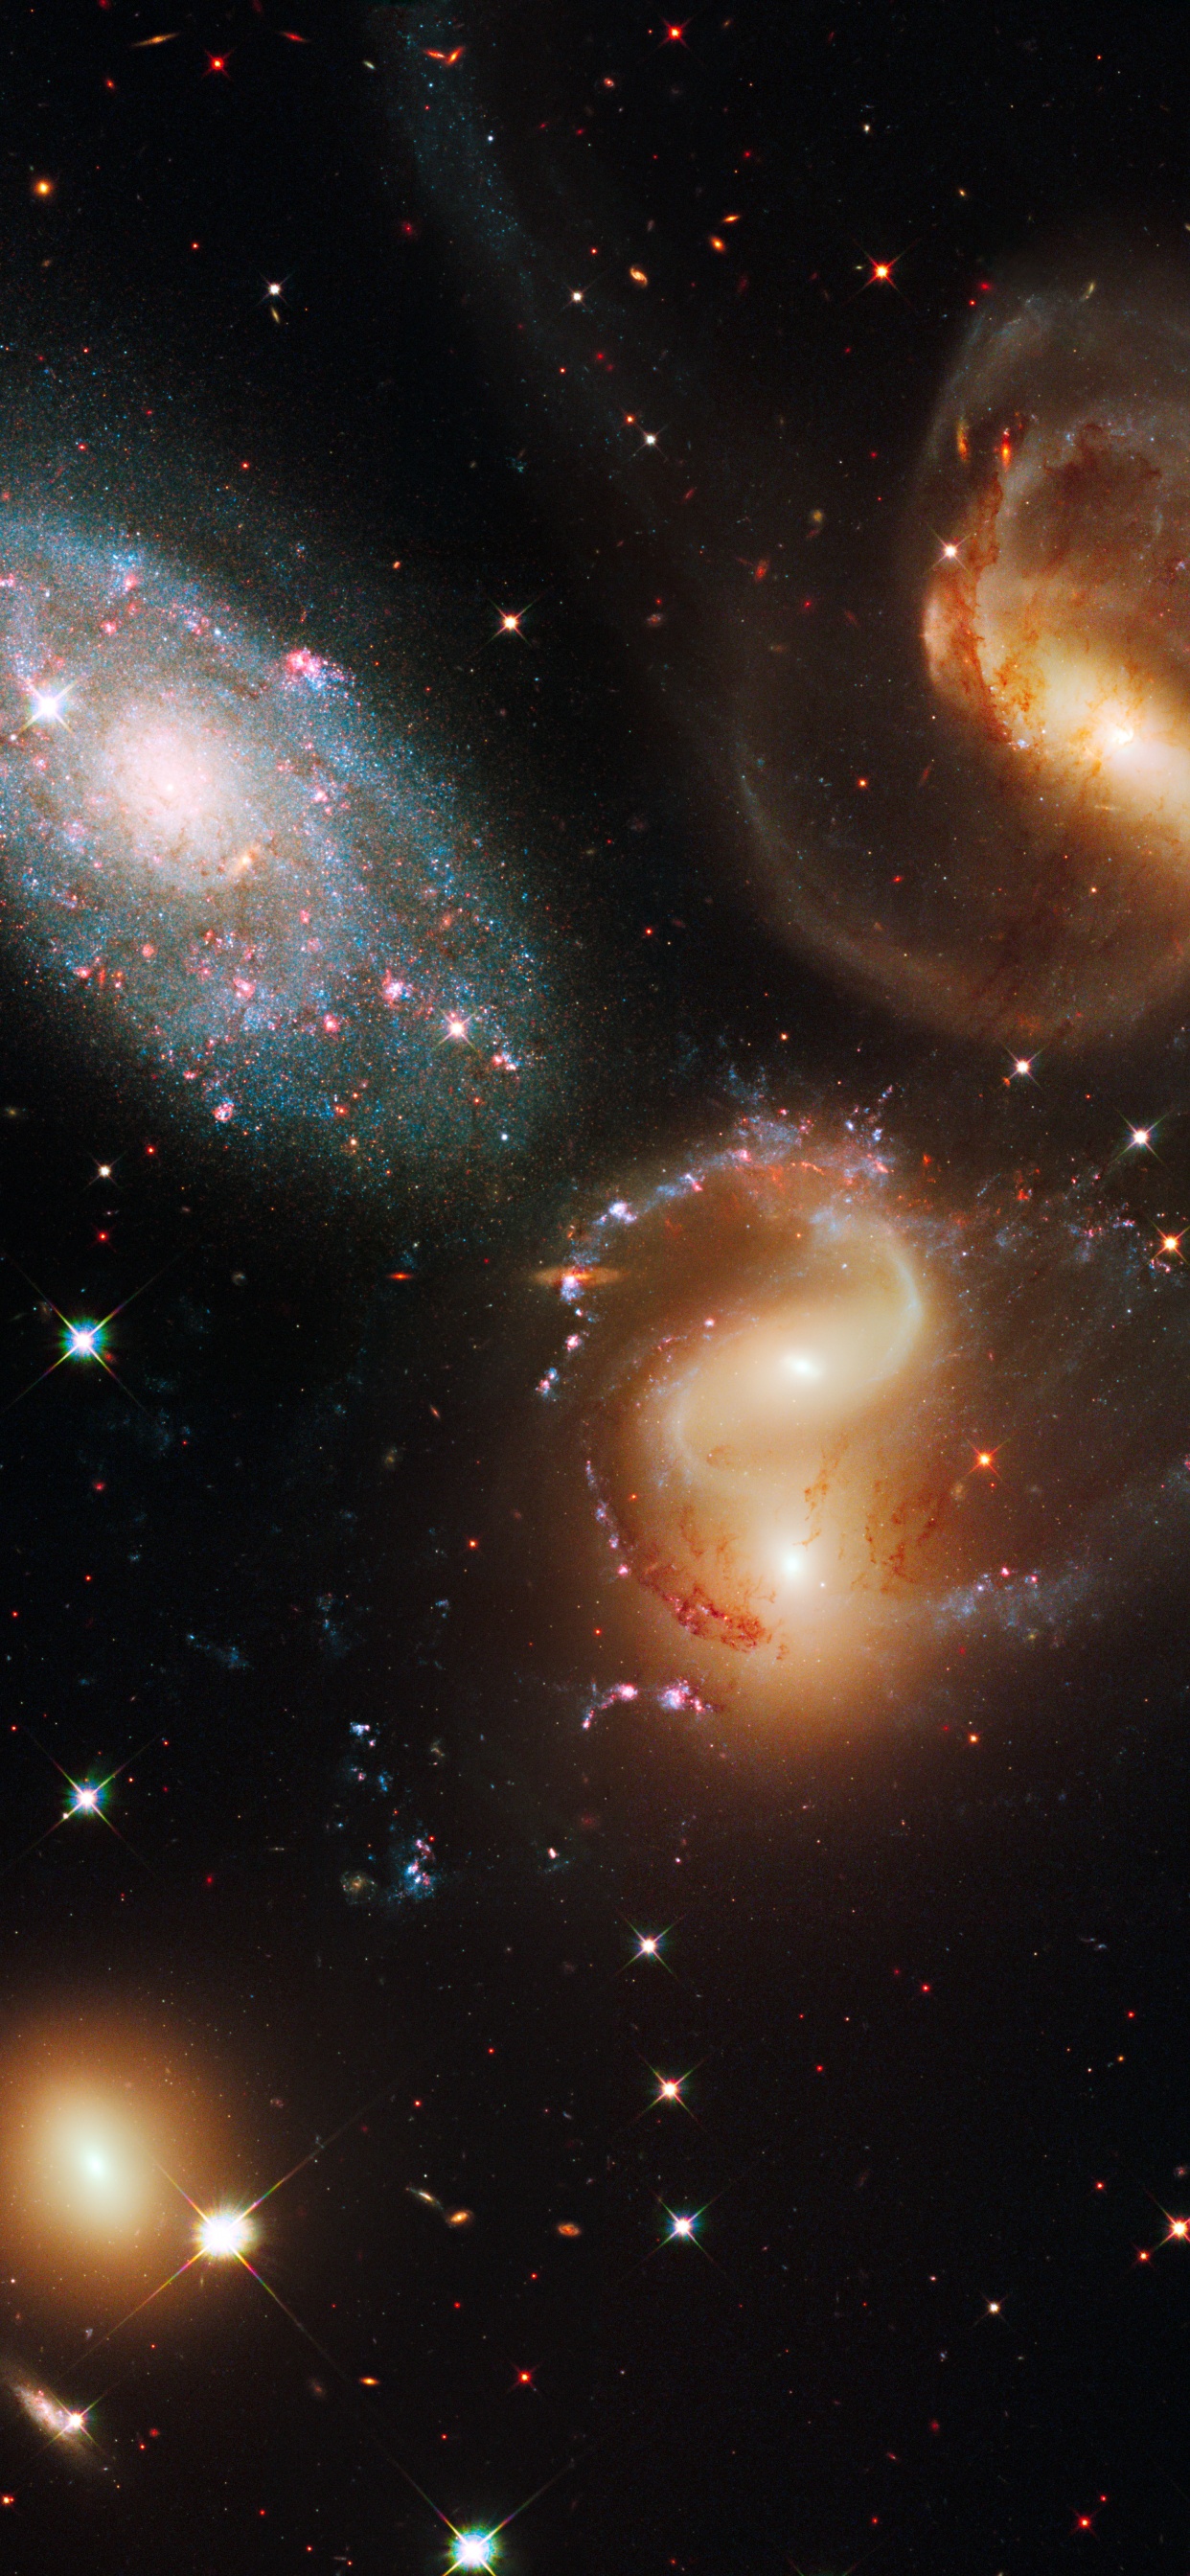 哈勃太空望远镜, 天文学, 外层空间, 天文学对象, 宇宙 壁纸 1242x2688 允许